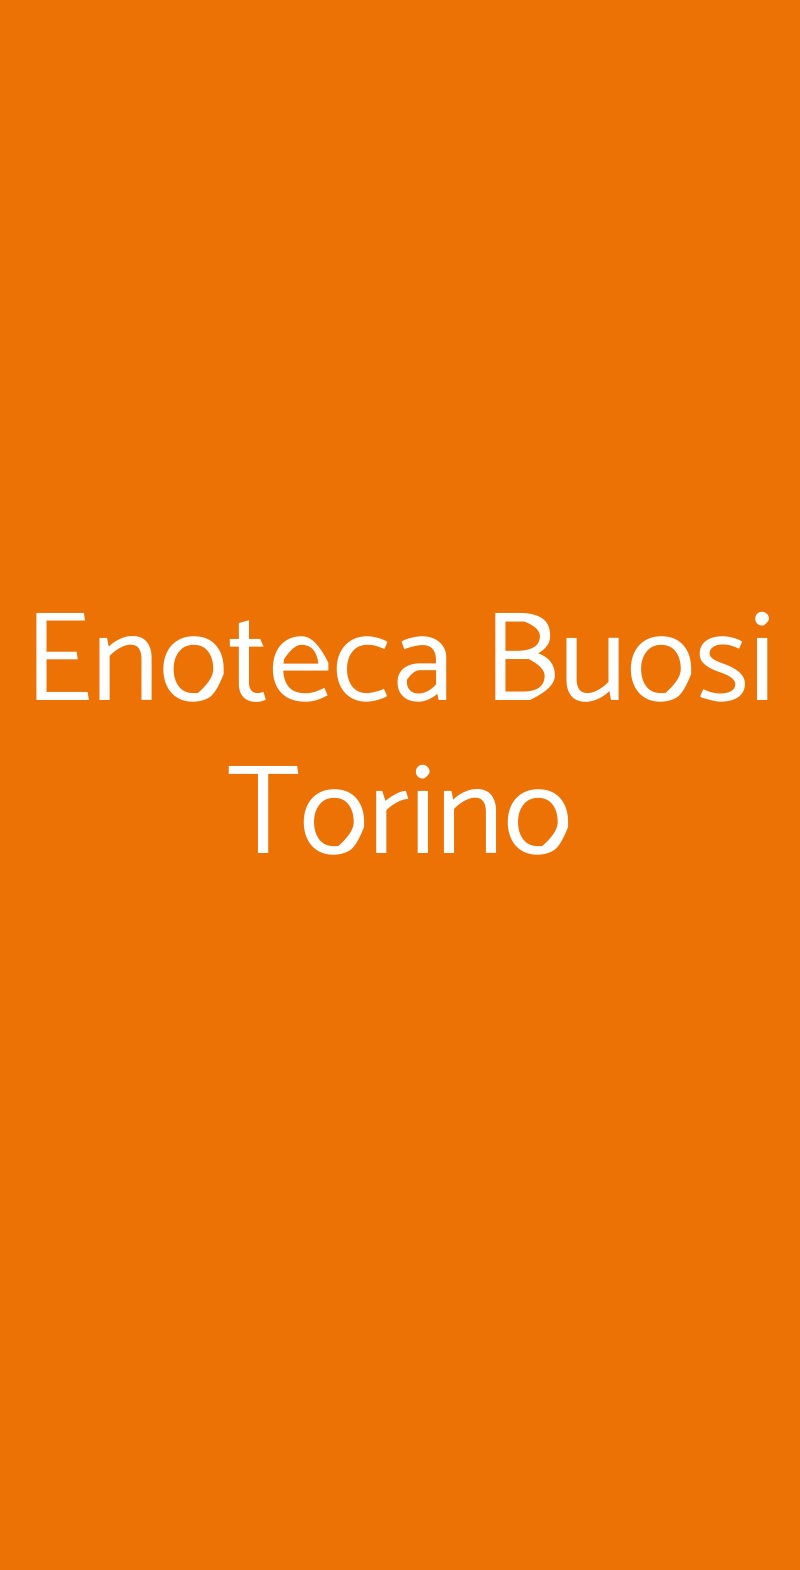 Enoteca Buosi Torino Torino menù 1 pagina